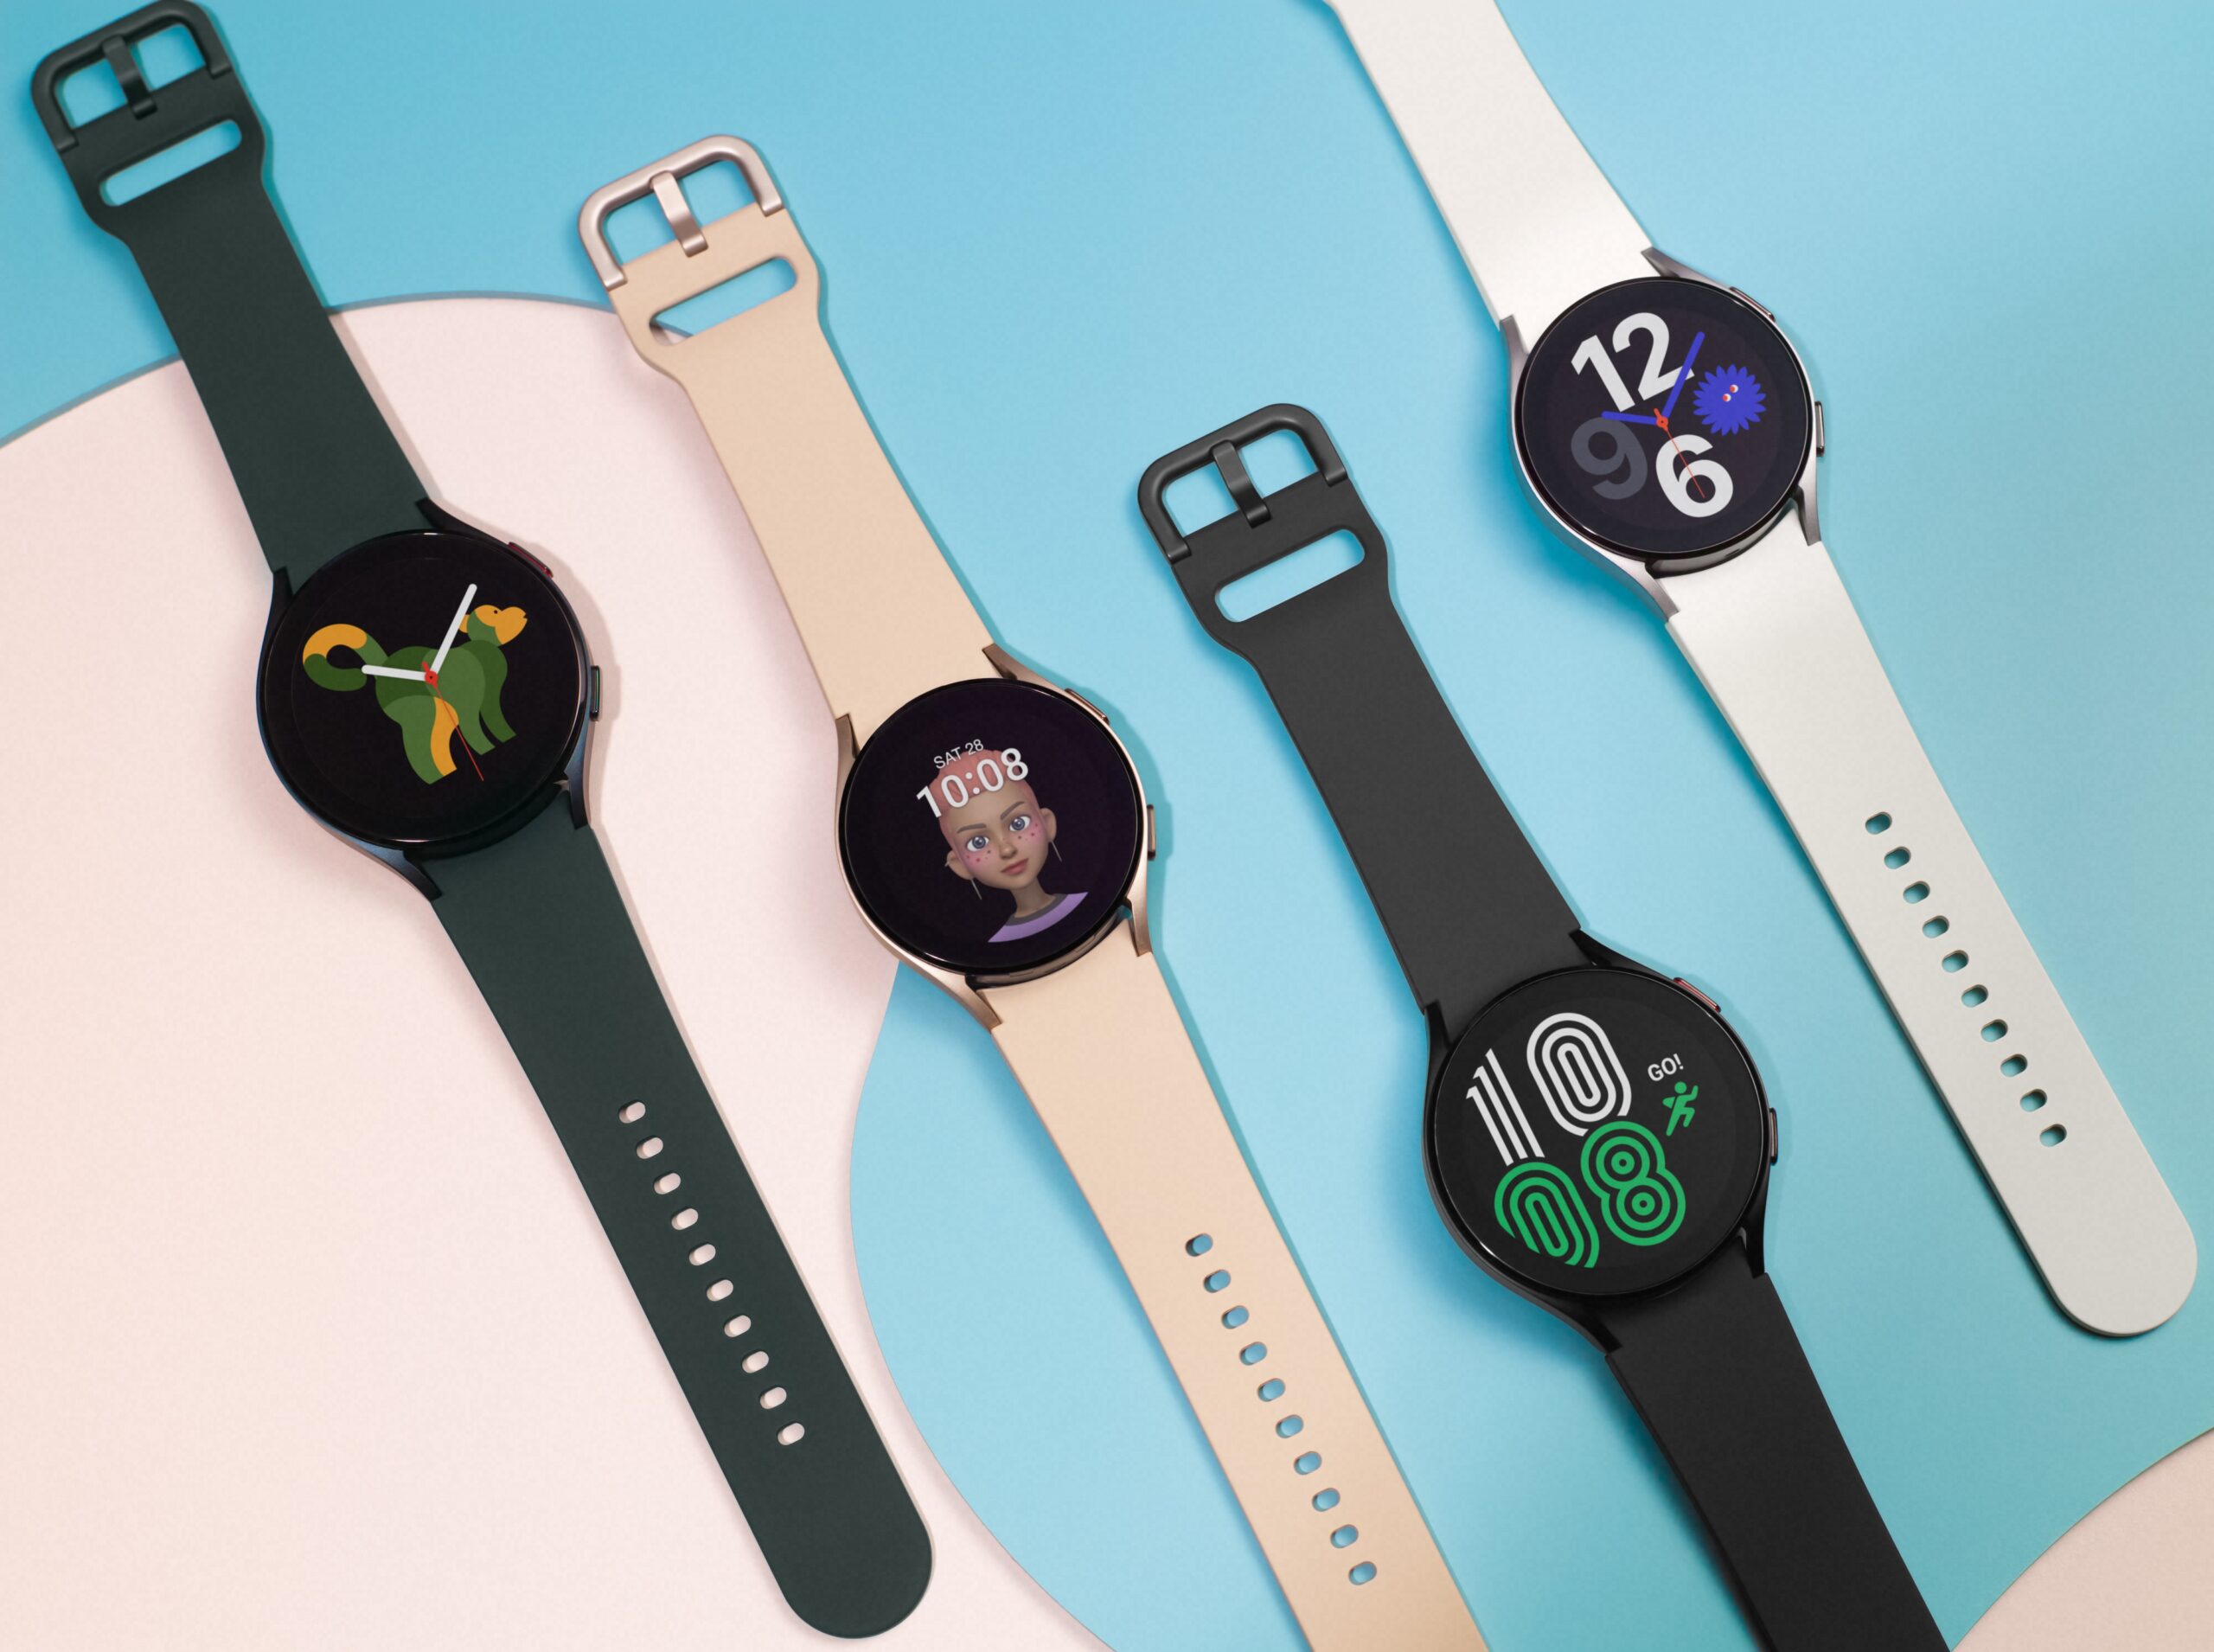 Samsungin Galaxy Watch4 -älykelloihin on nyt saatavilla uusia ja paranneltuja ominaisuuksia